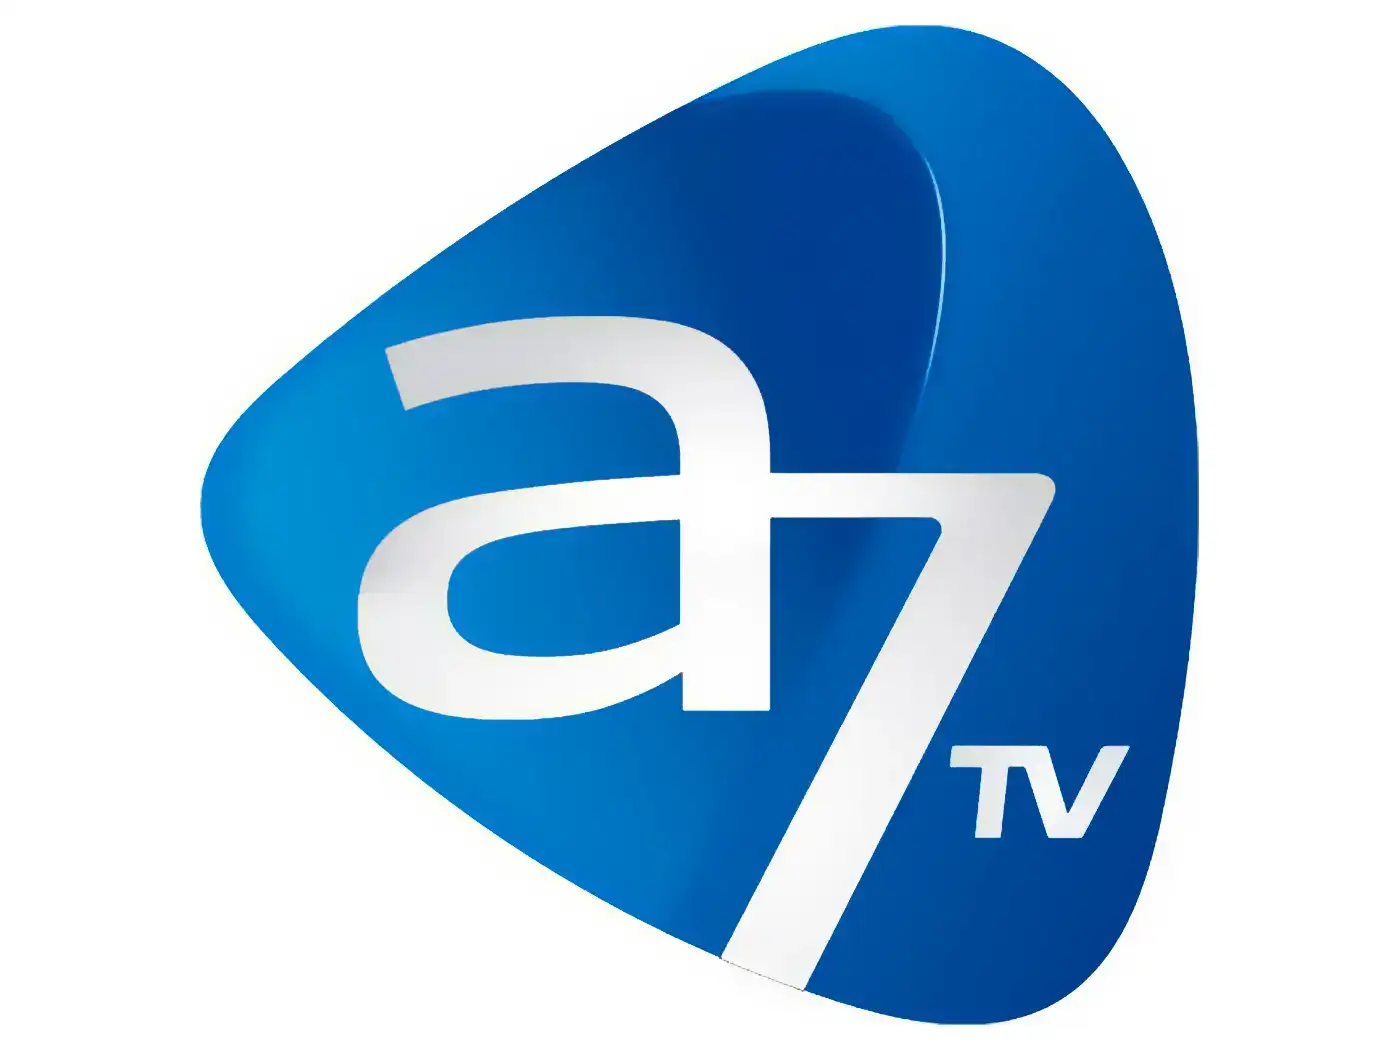 7 ТВ Телеканал. 7тв. Румынские Телеканалы. ТВ канал семерка. S 7 tv